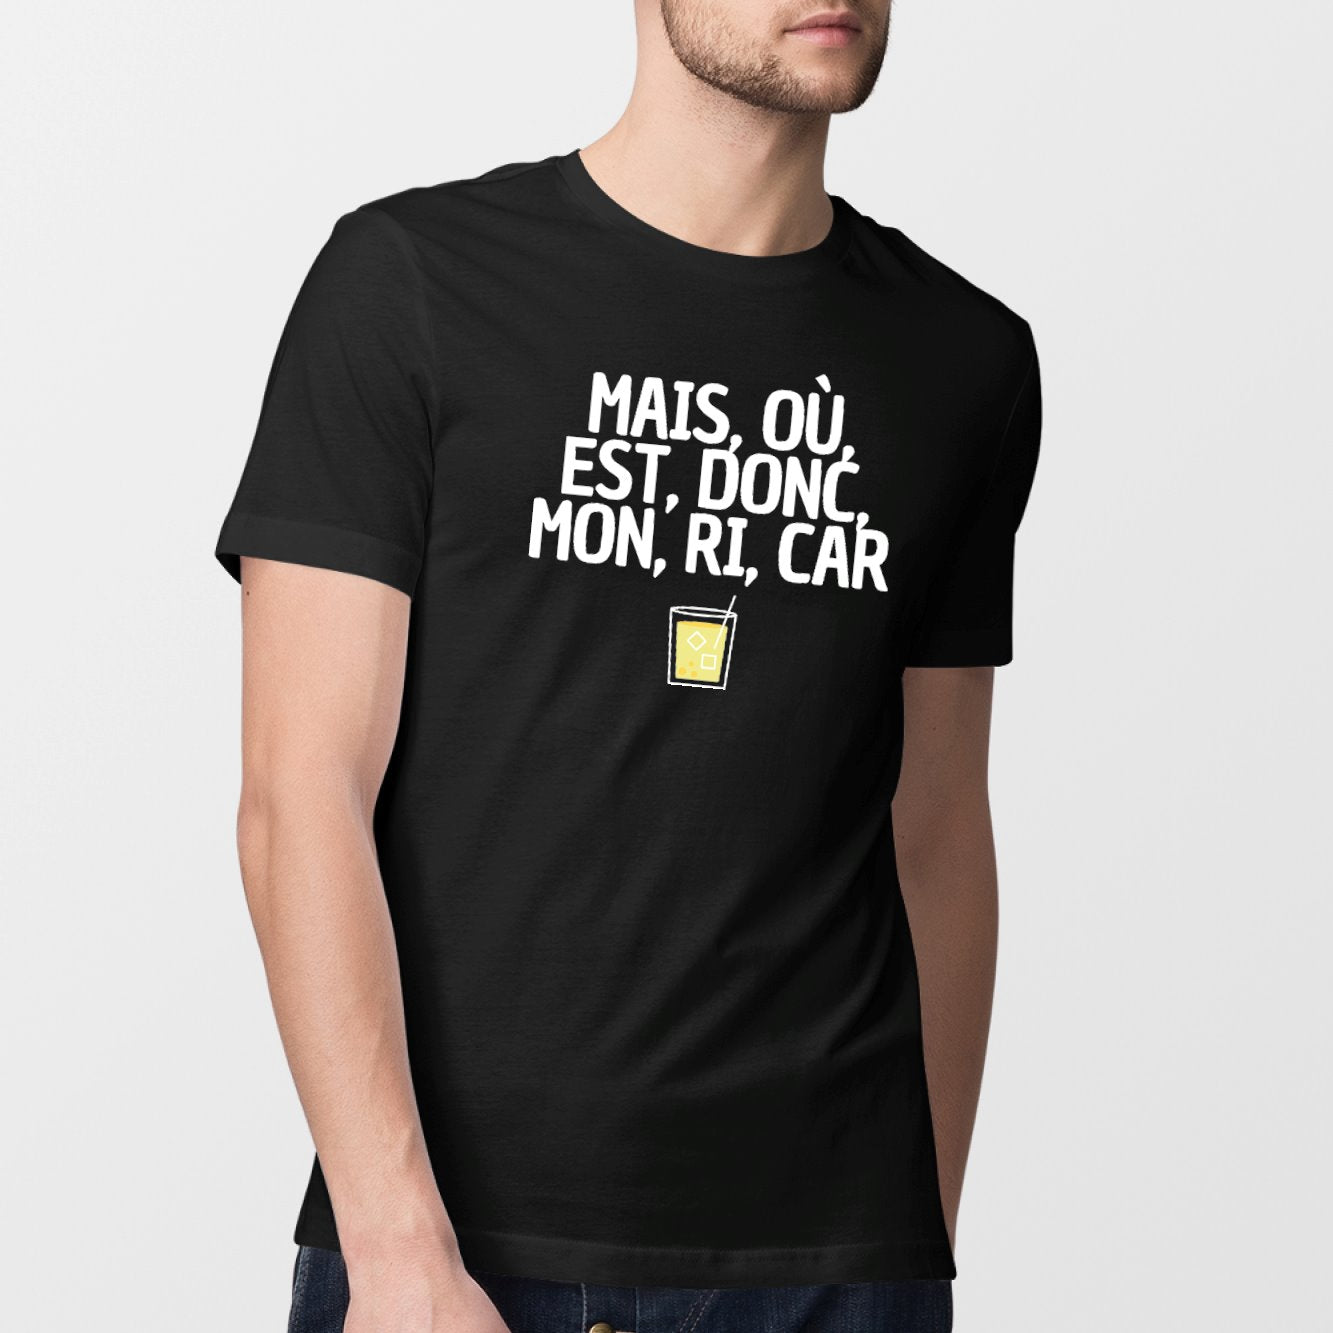 T-Shirt Homme Mais, où, est, donc, mon, ri, car Noir